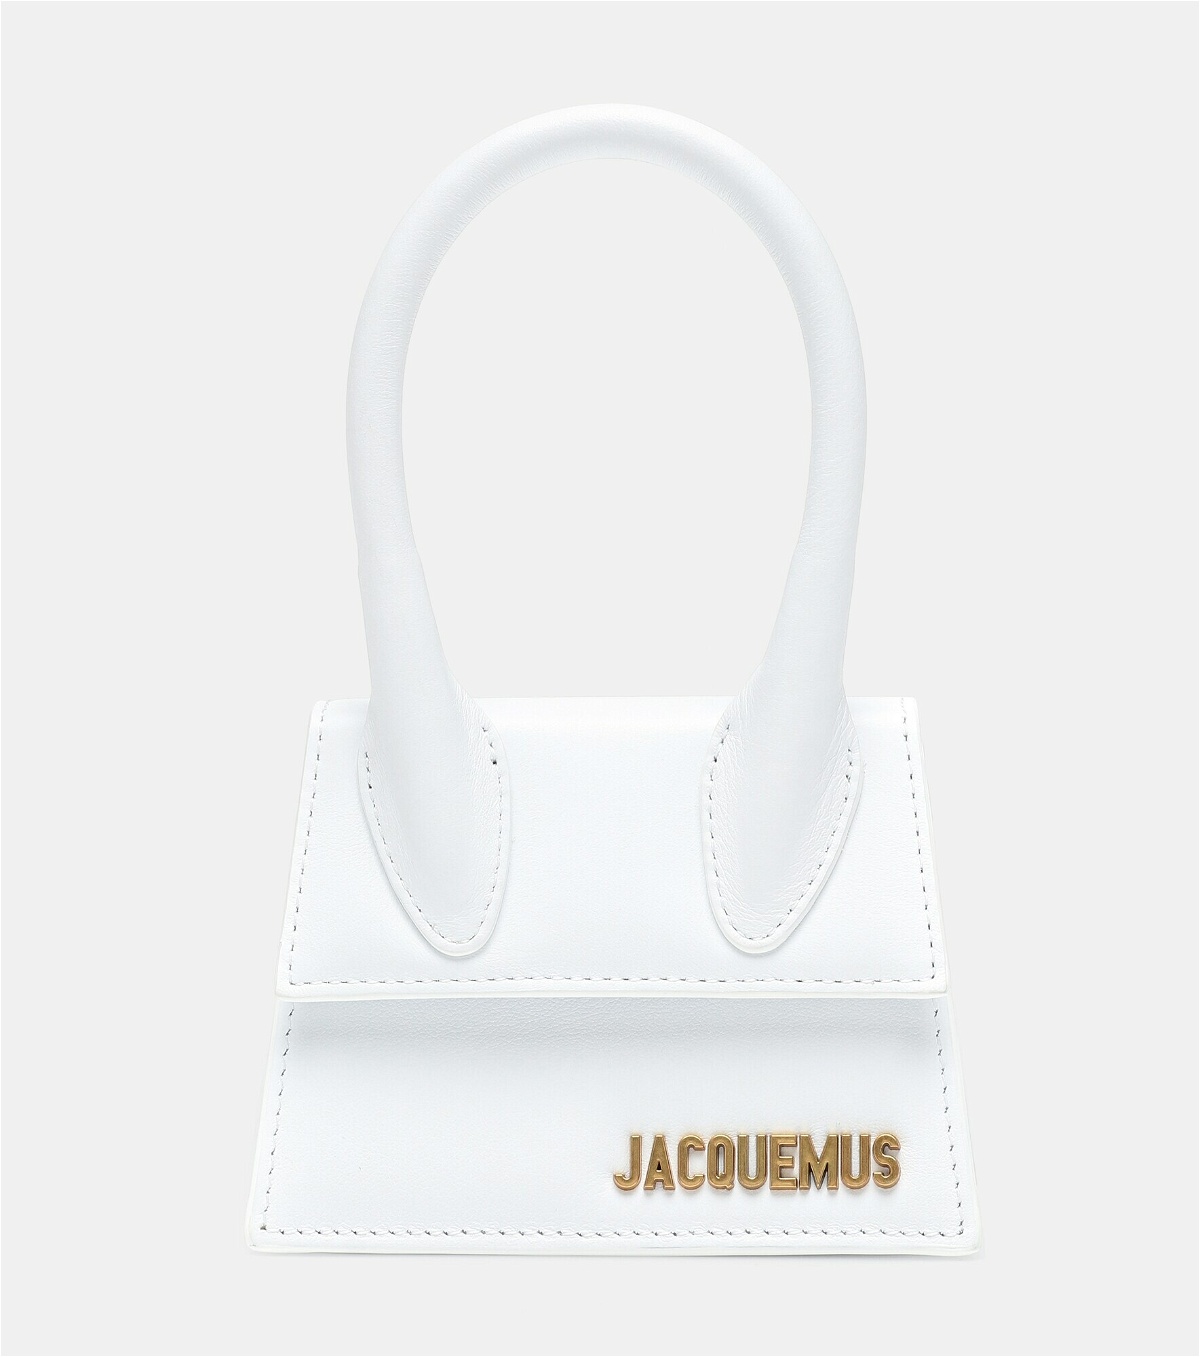 Jacquemus - Le Chiquito leather tote Jacquemus